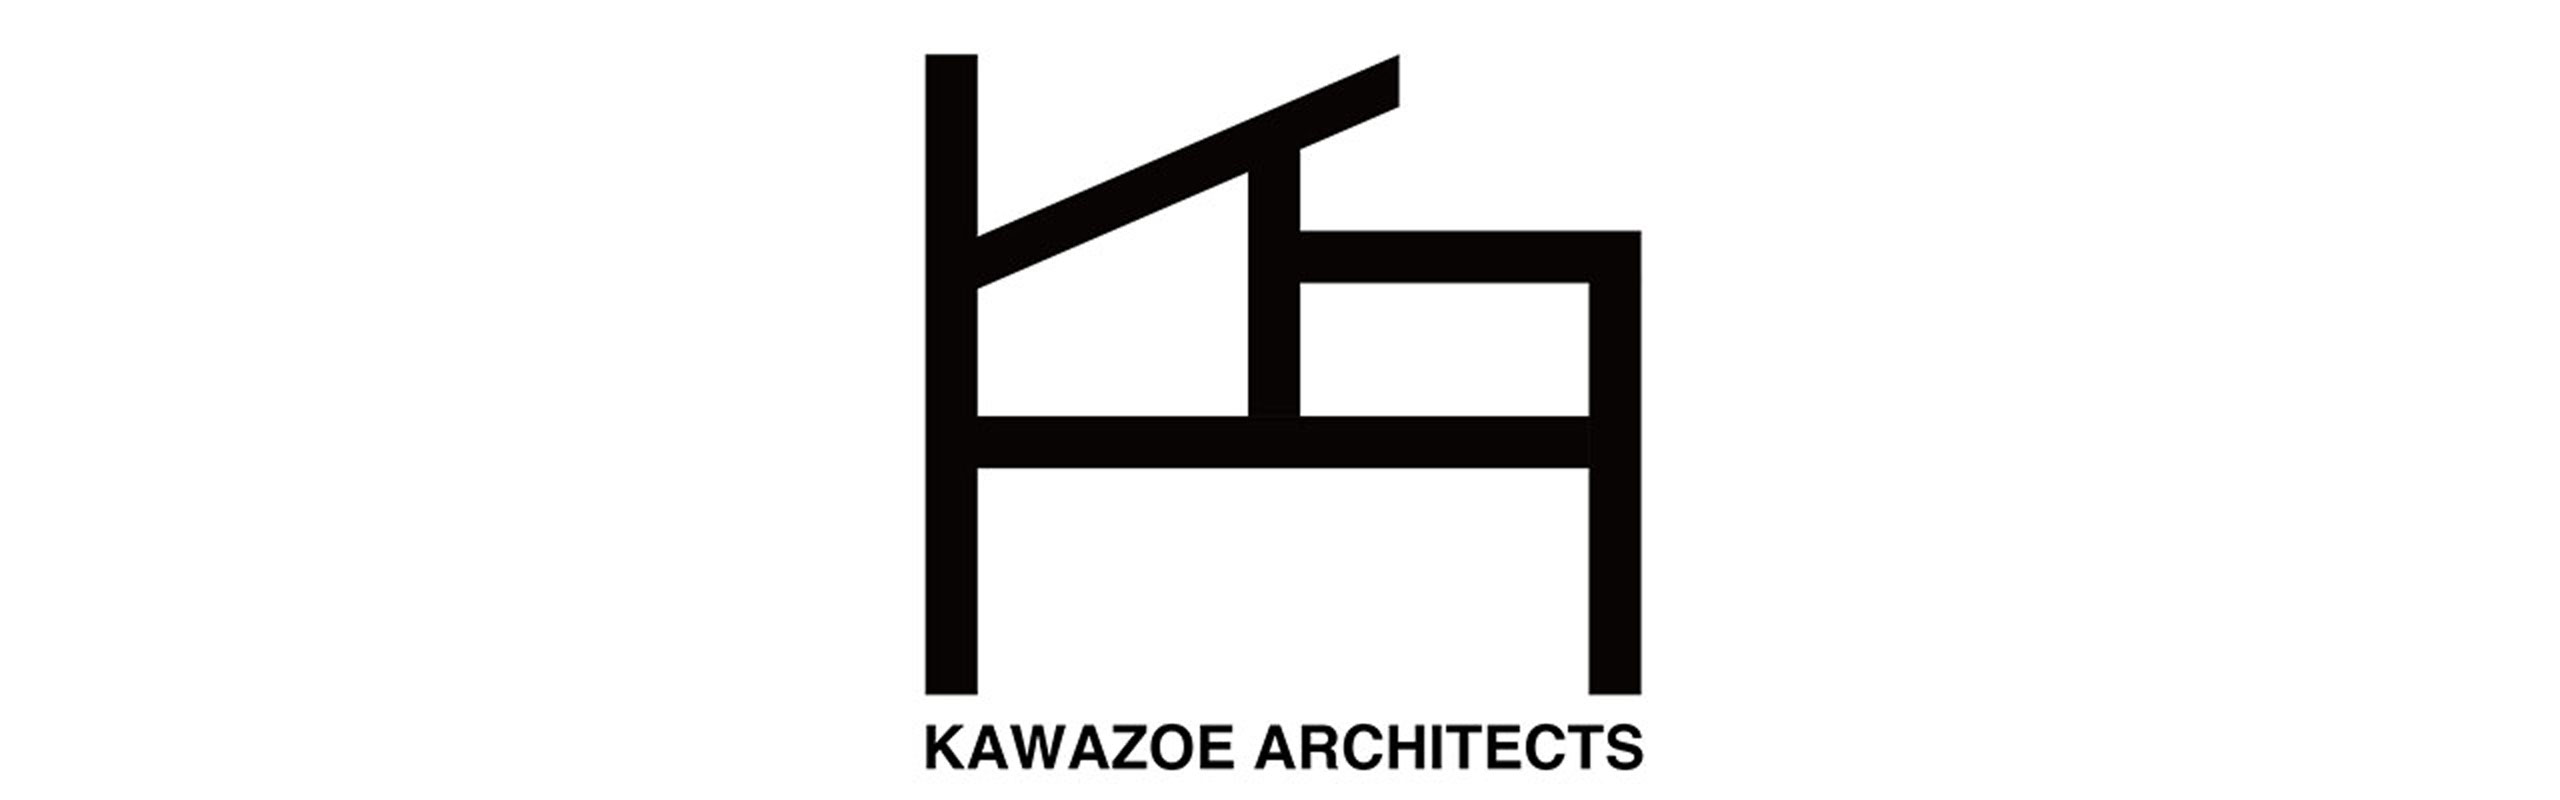 東京 香川の建築設計事務所